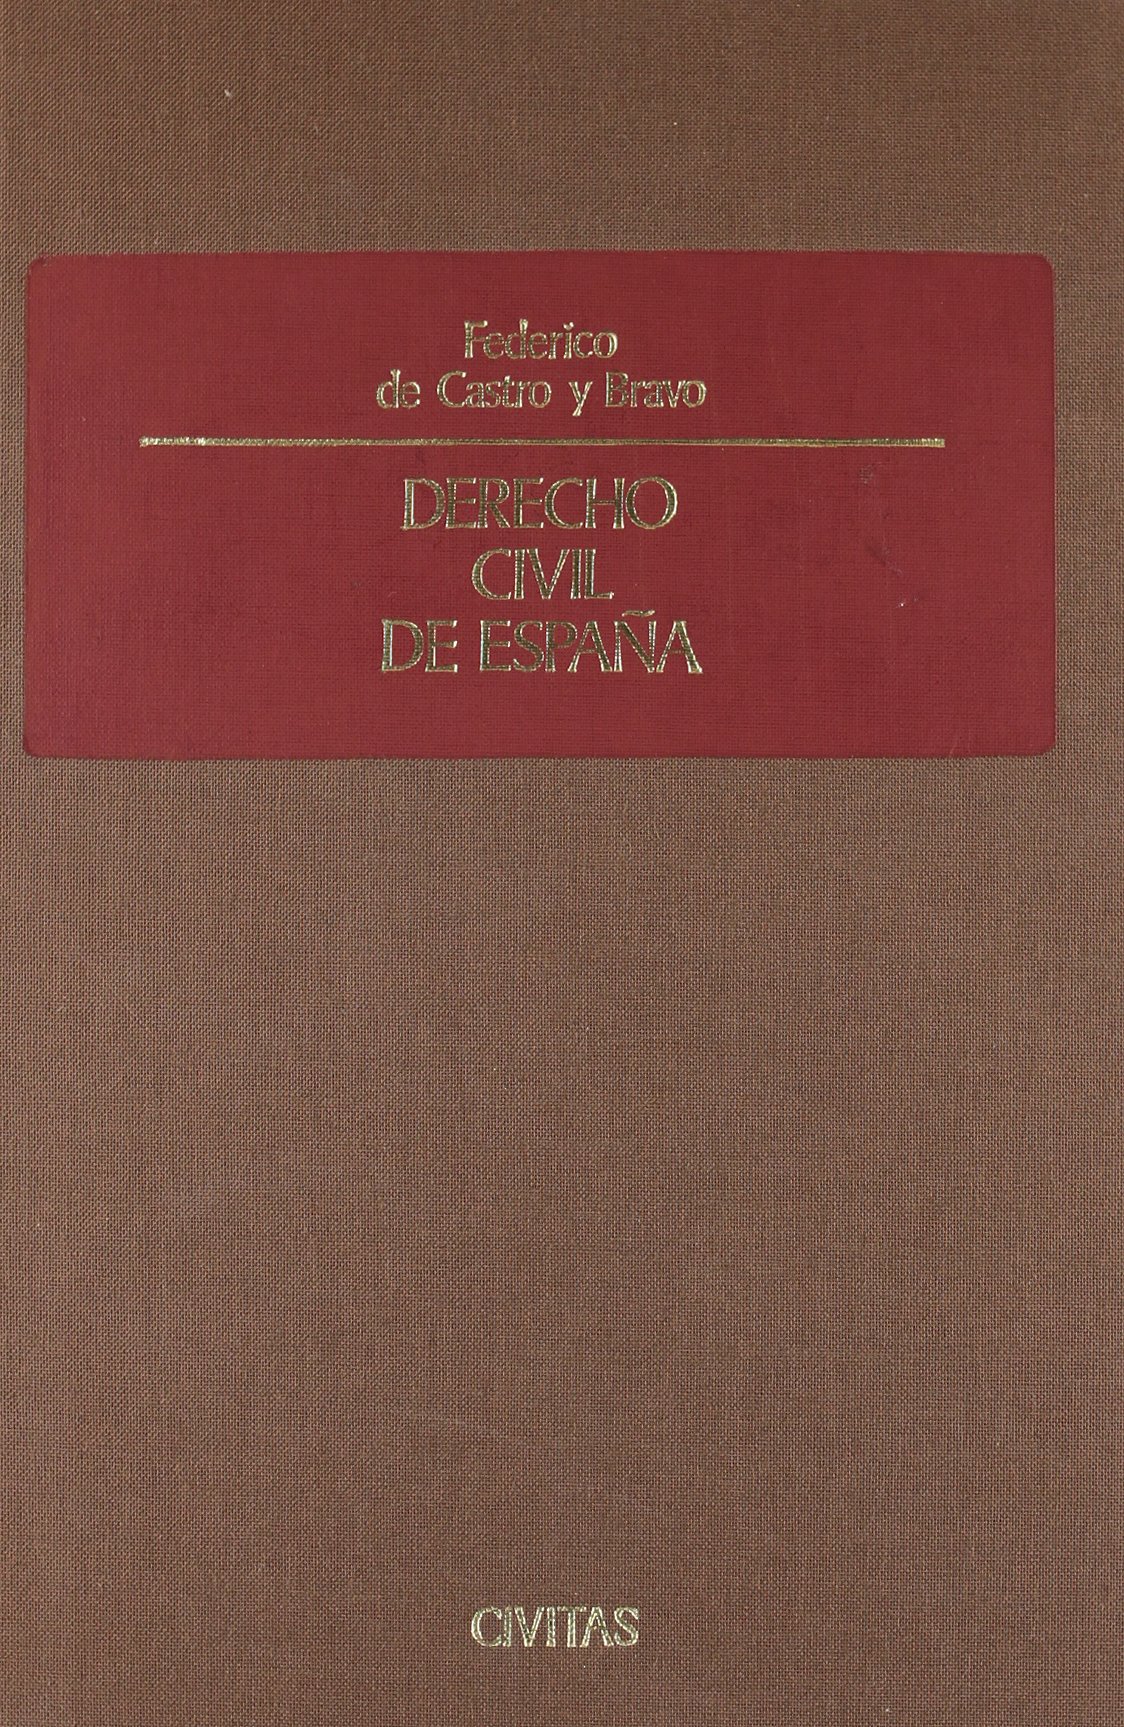 Imagen de portada del libro Derecho civil de España